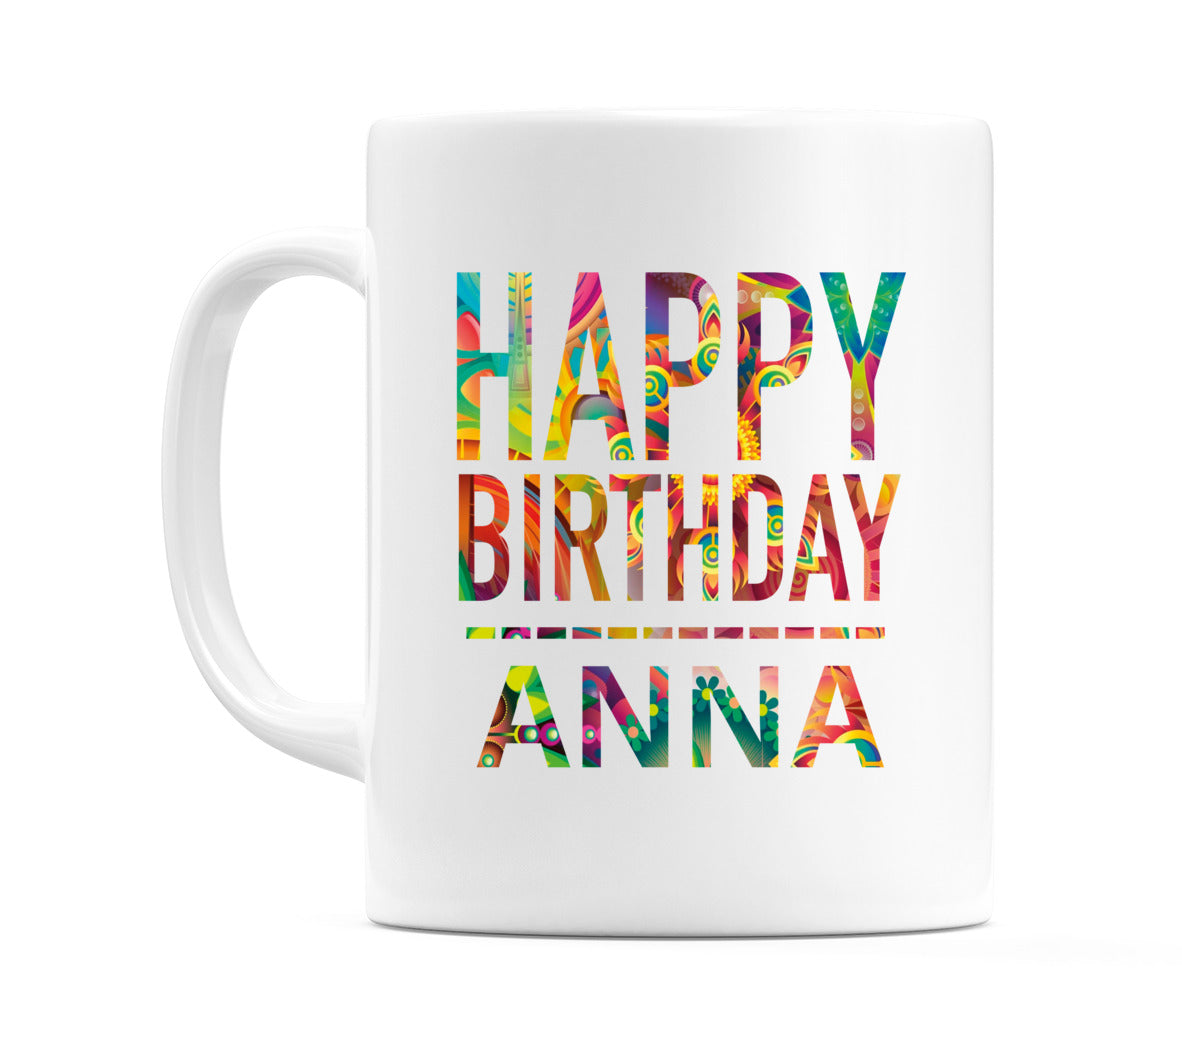 Happy Birthday Anna (Tie Dye Effect) Mug Cup by WeDoMugs